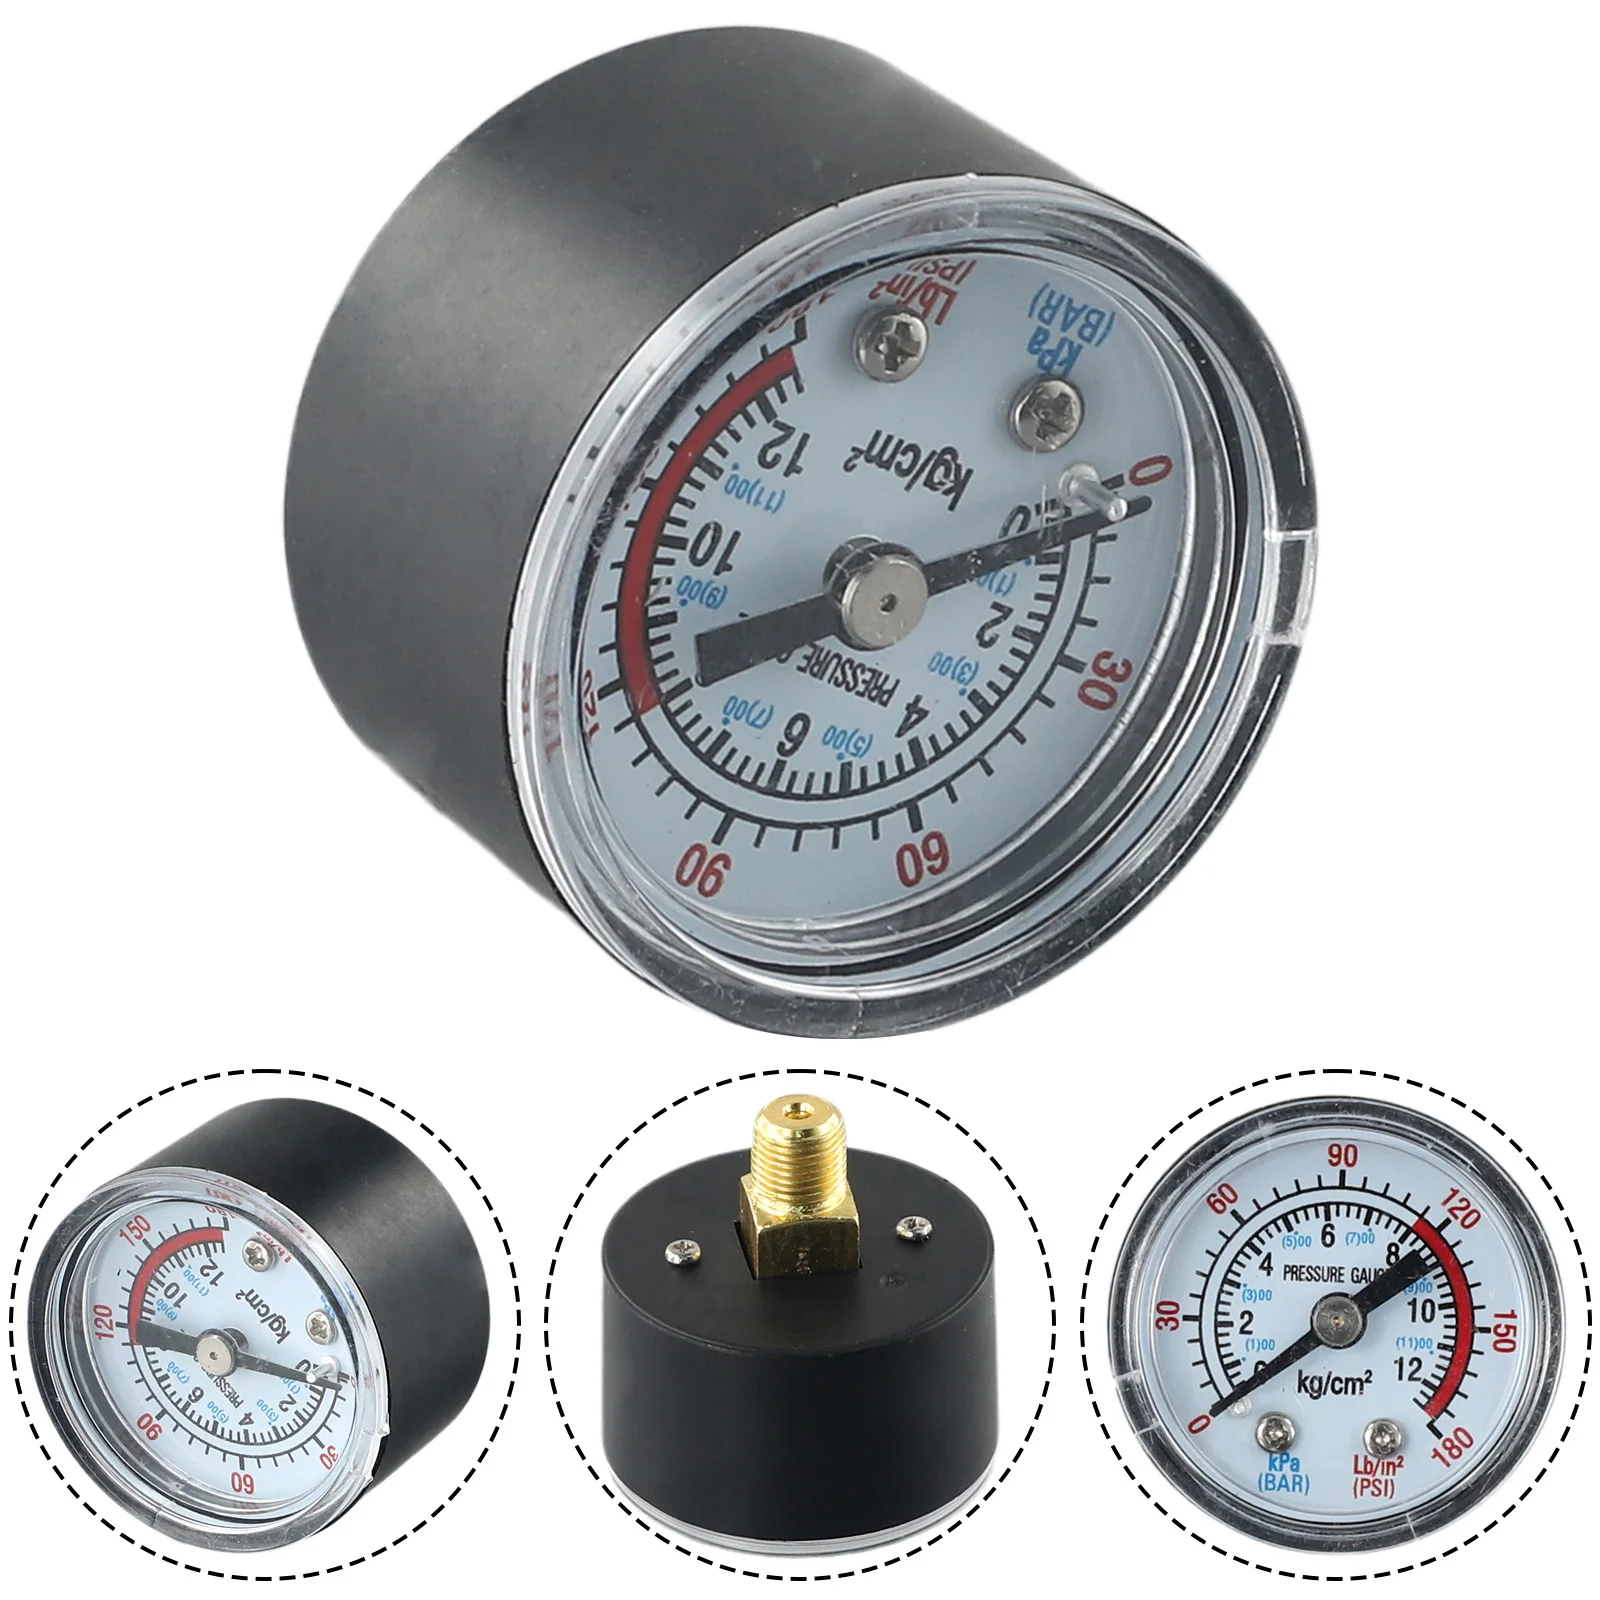 Пневматический гидравлический датчик давления жидкости воздушного компрессора 0-12 бар / 0-180 фунтов на квадратный дюйм Измерительный прибор с циферблатом Диаметр манометра воздушного давления 40 мм